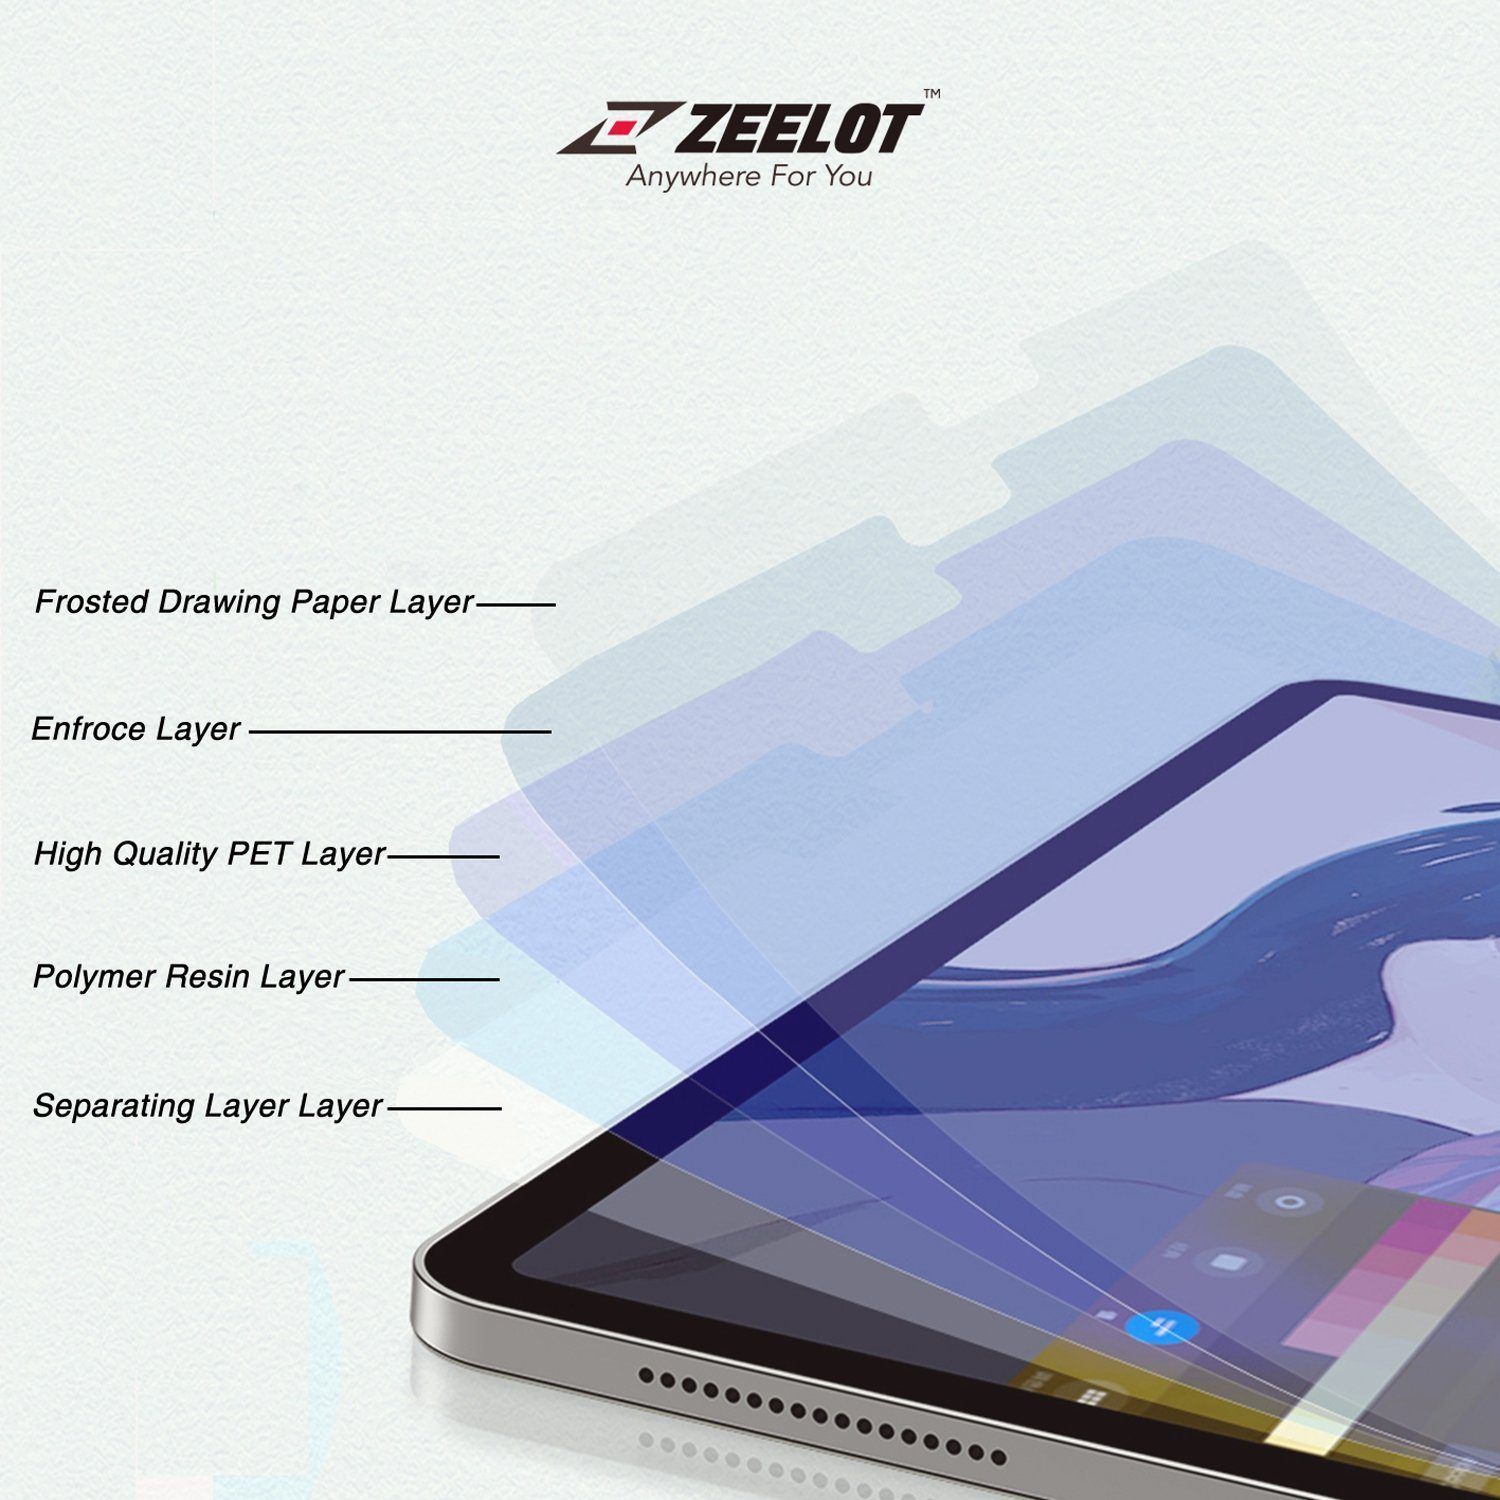 ZEELOT Paper Like Screen Protector for iPad Pro 12.9" (2021/2018), Clear Default ZEELOT 